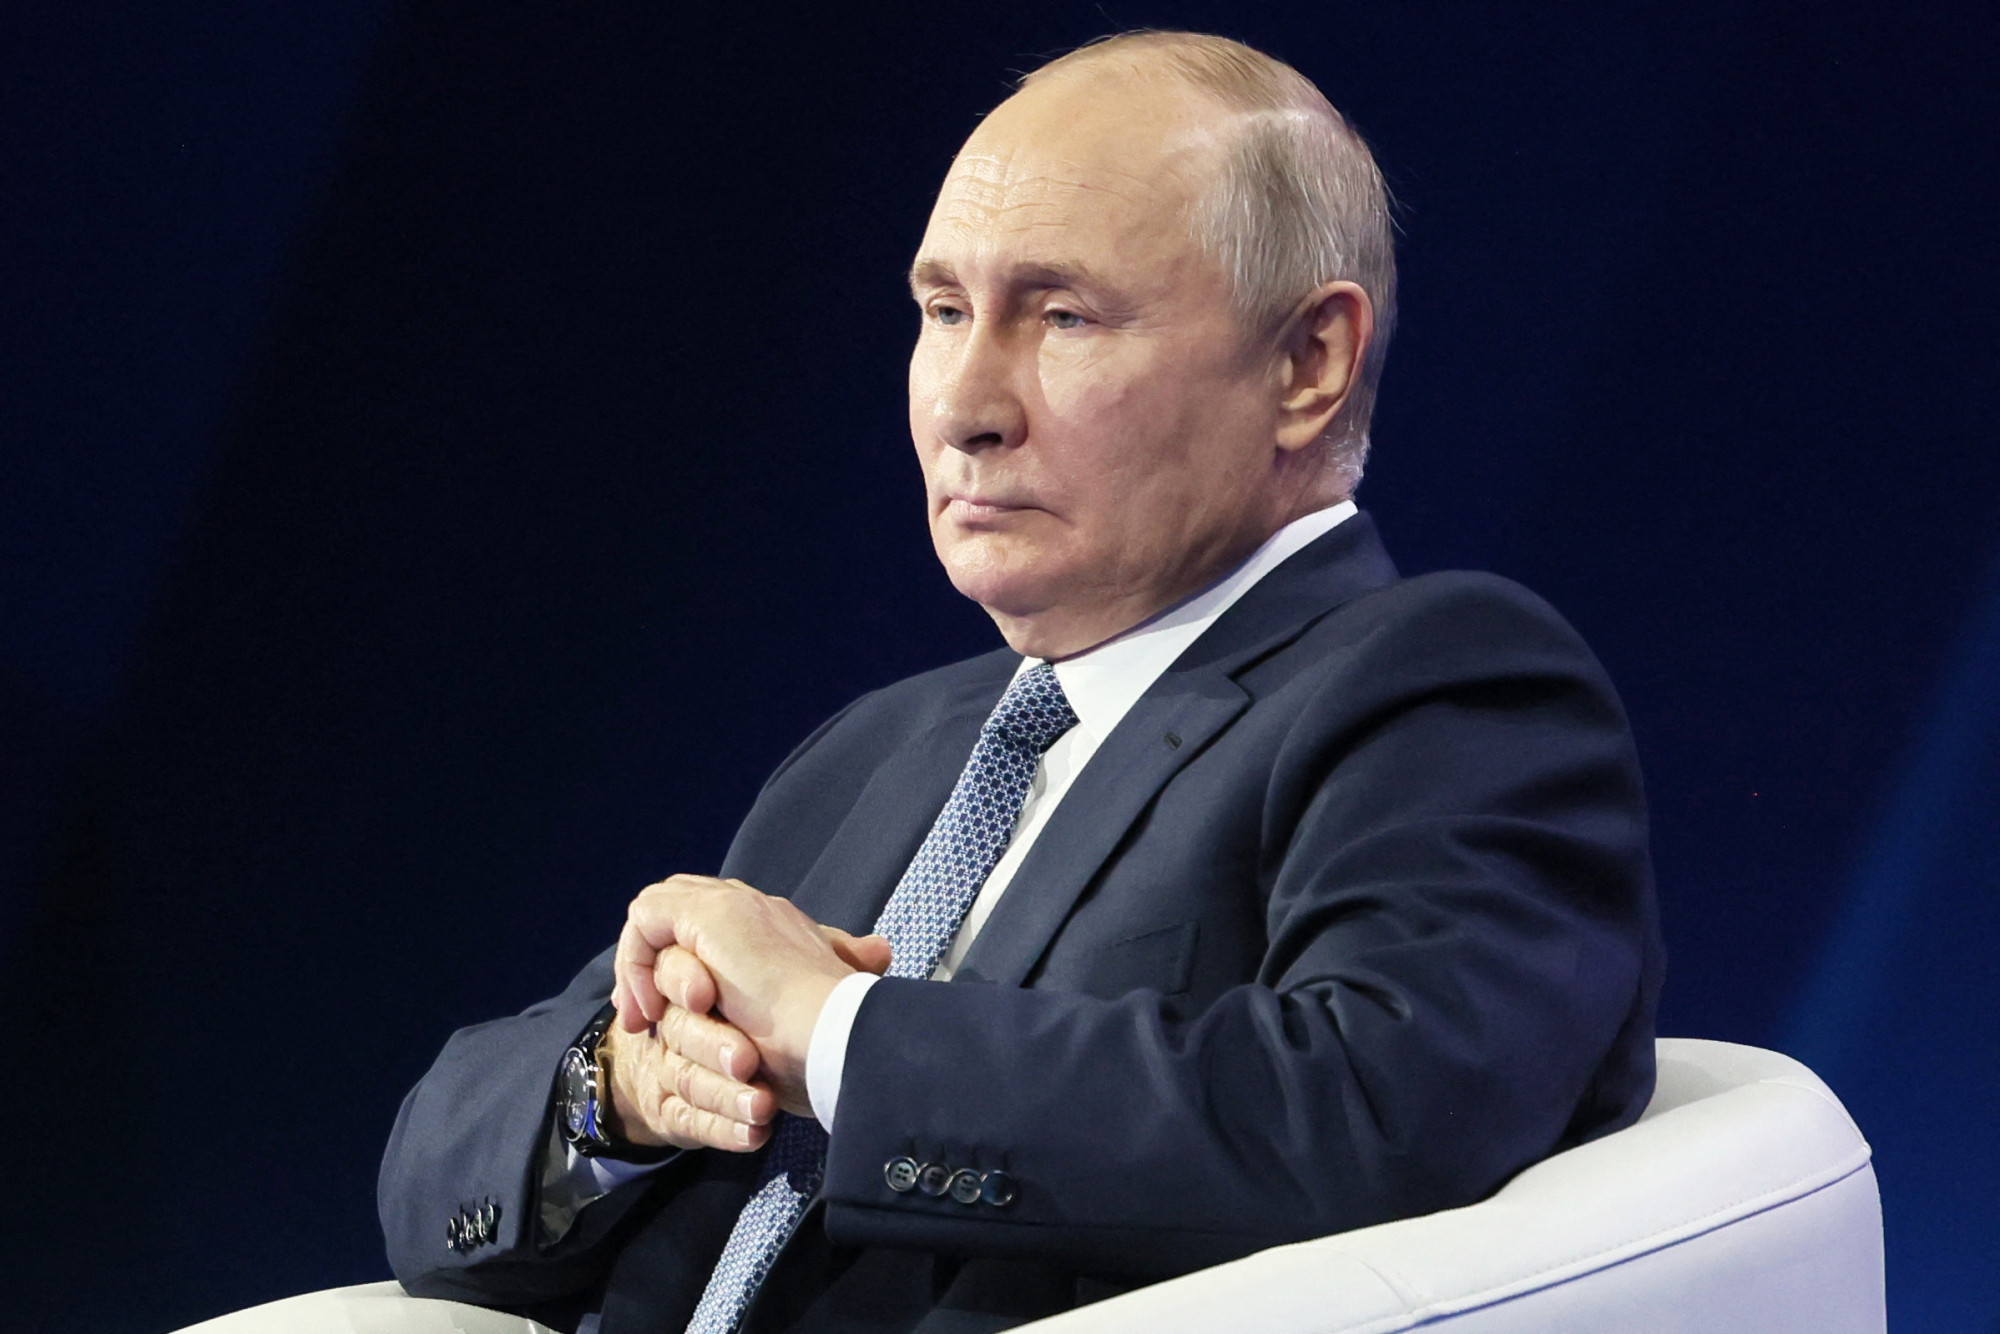 Az orosz diktátor szerint a világ megszabadul az adósrabszolgaságba taszító diktatúráktól